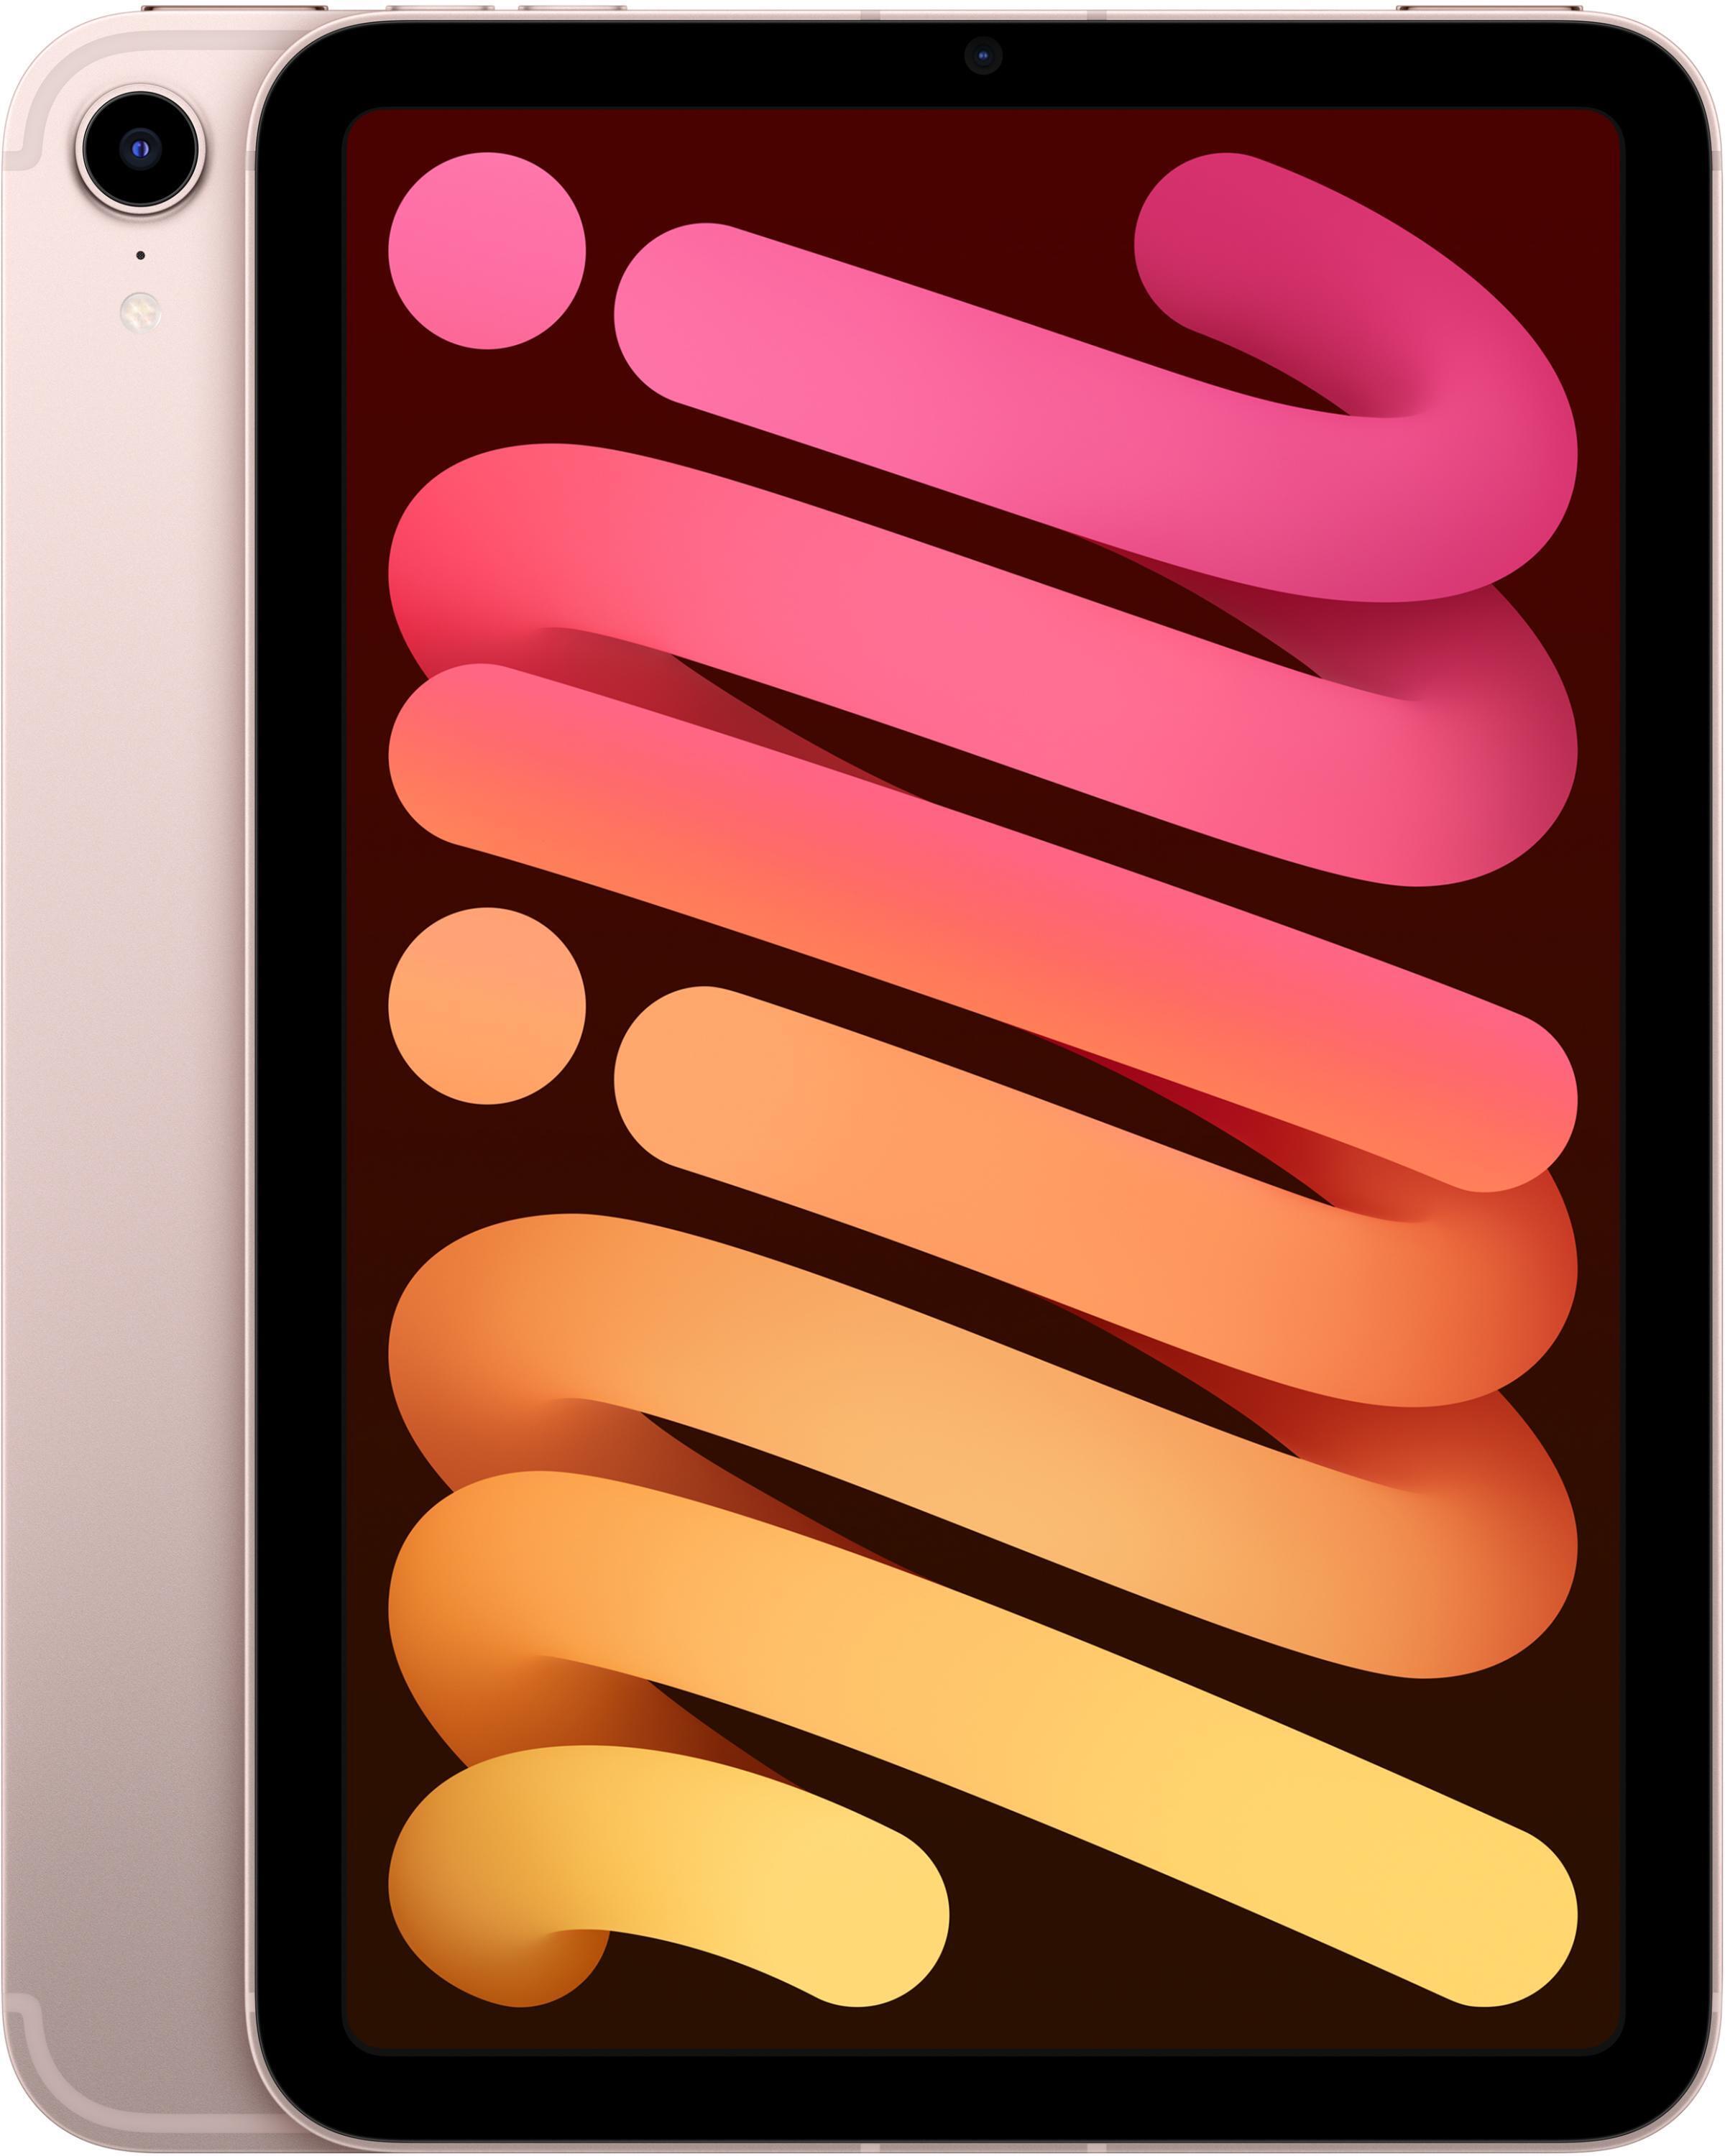 Apple iPad mini Wi-Fi + Cellular 64GB - Pink | Sweetwater